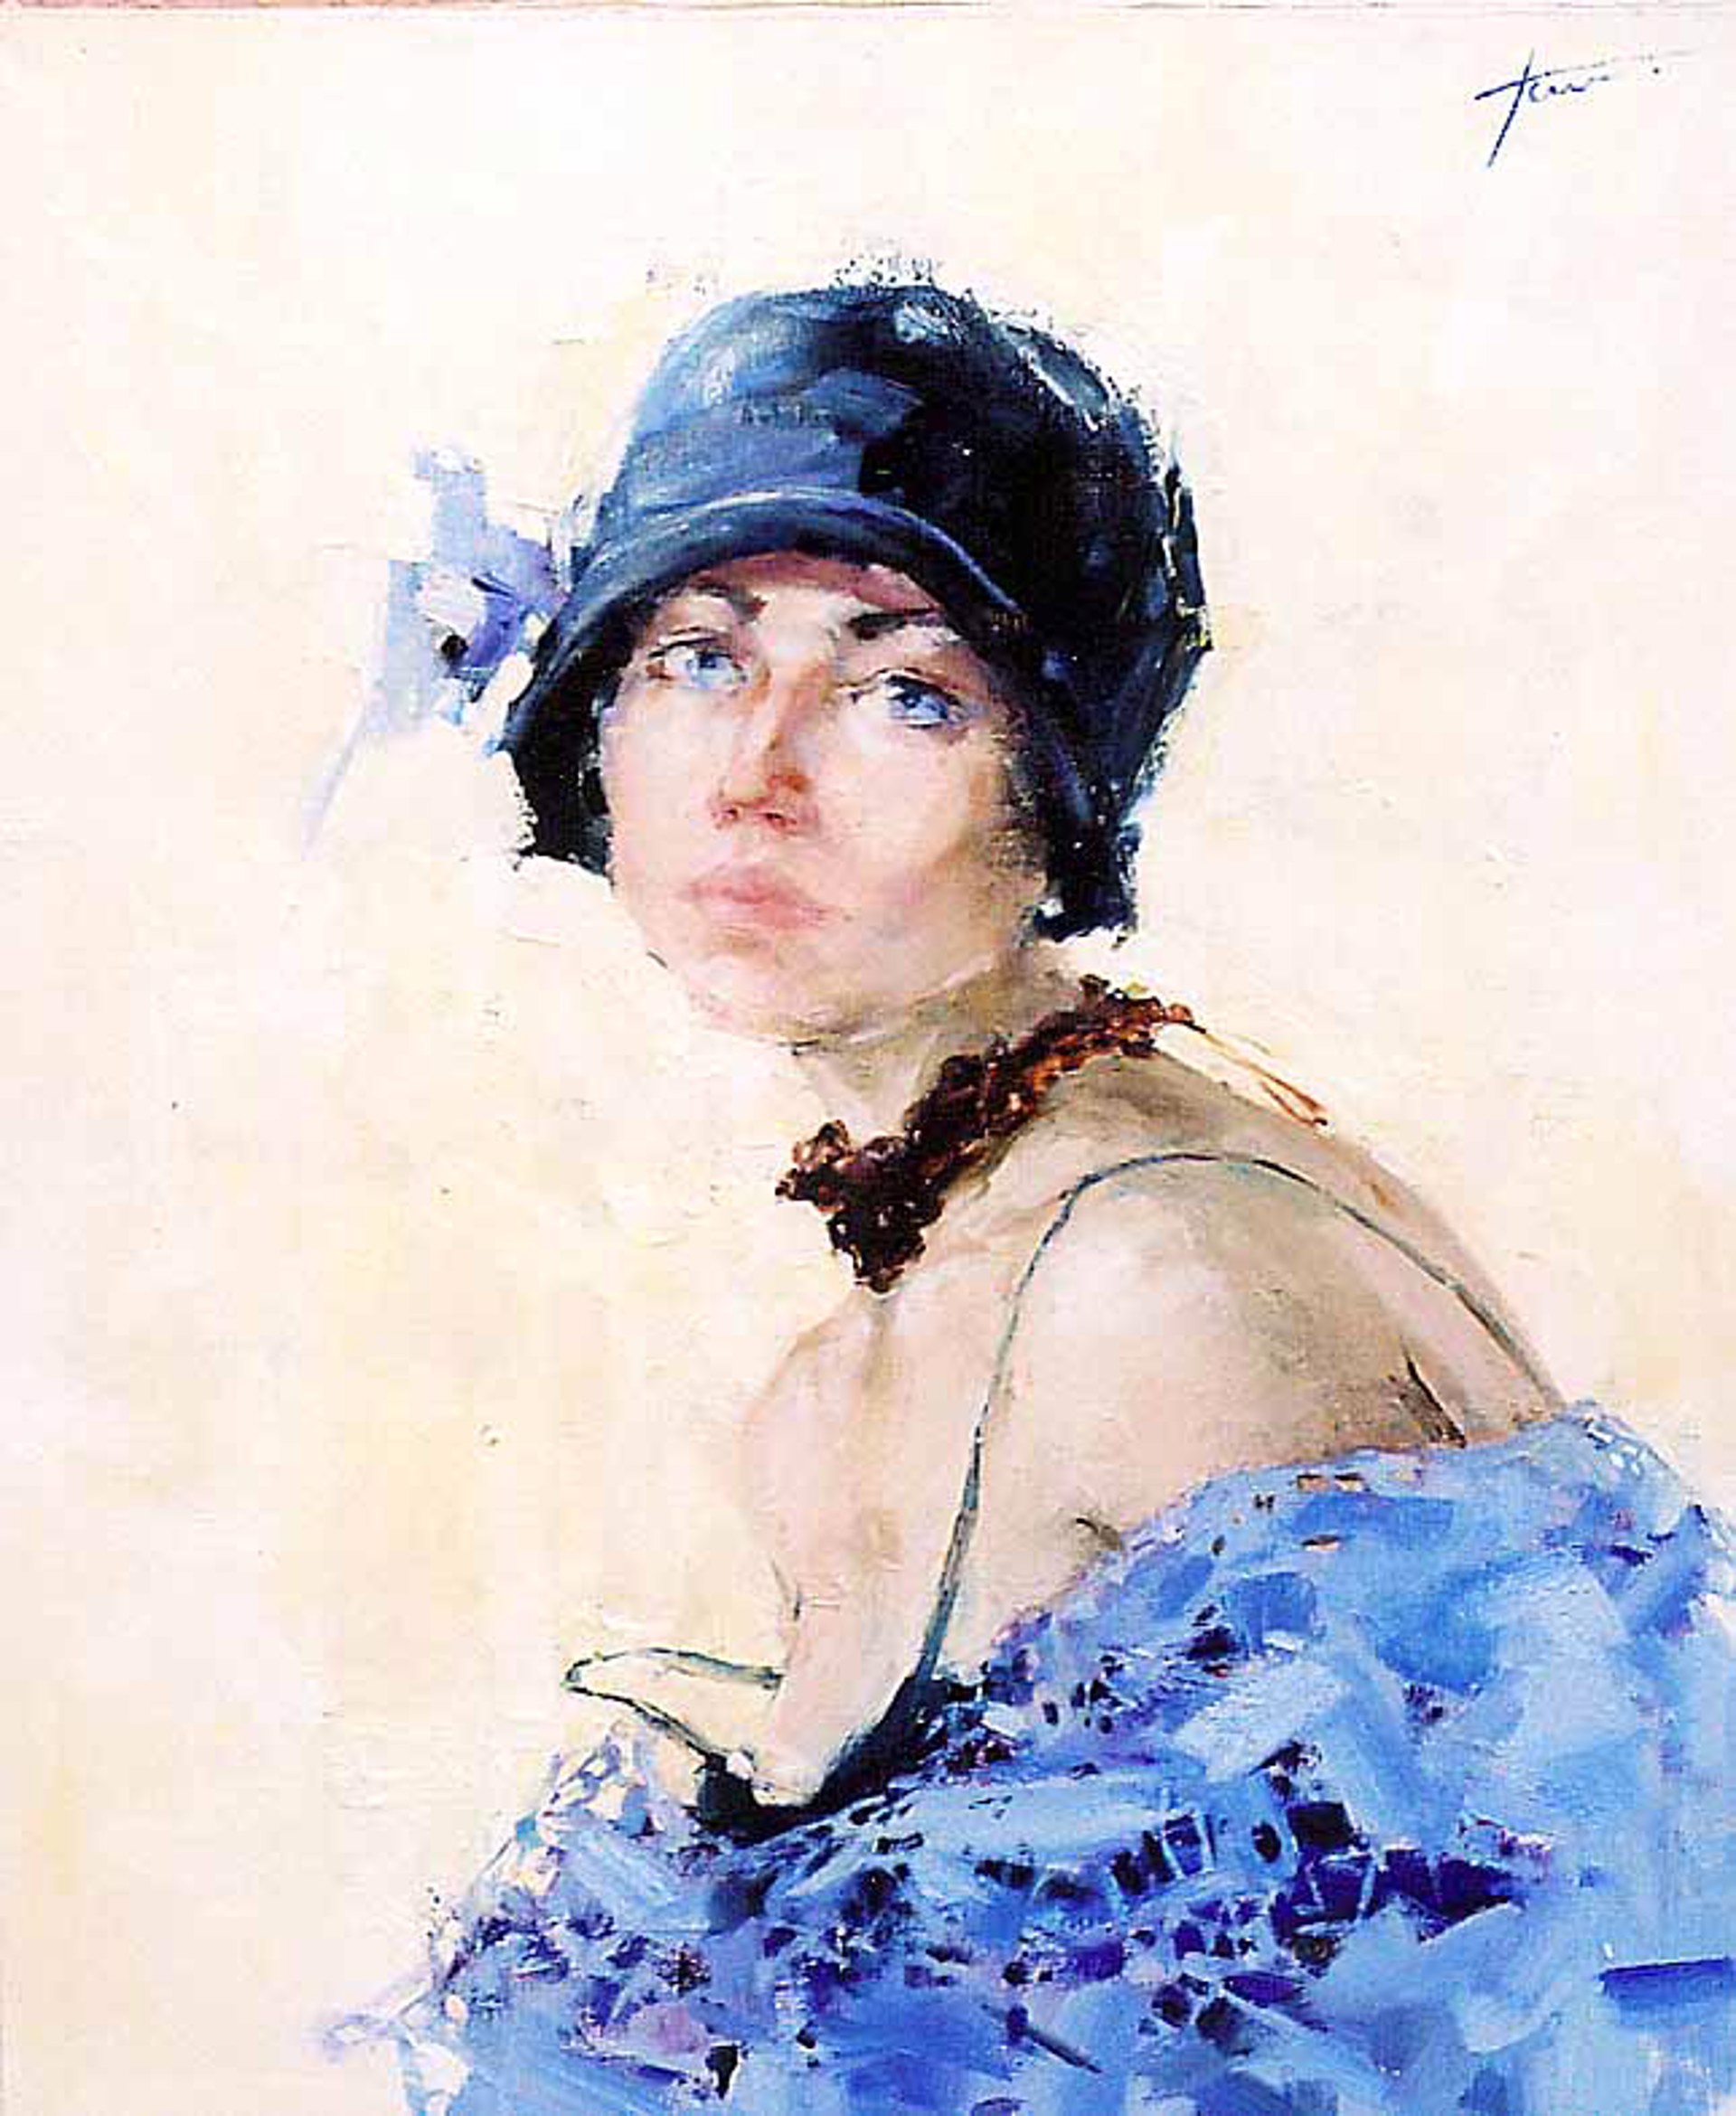 Self Portrait in Blue by Yana Golubyatnikova